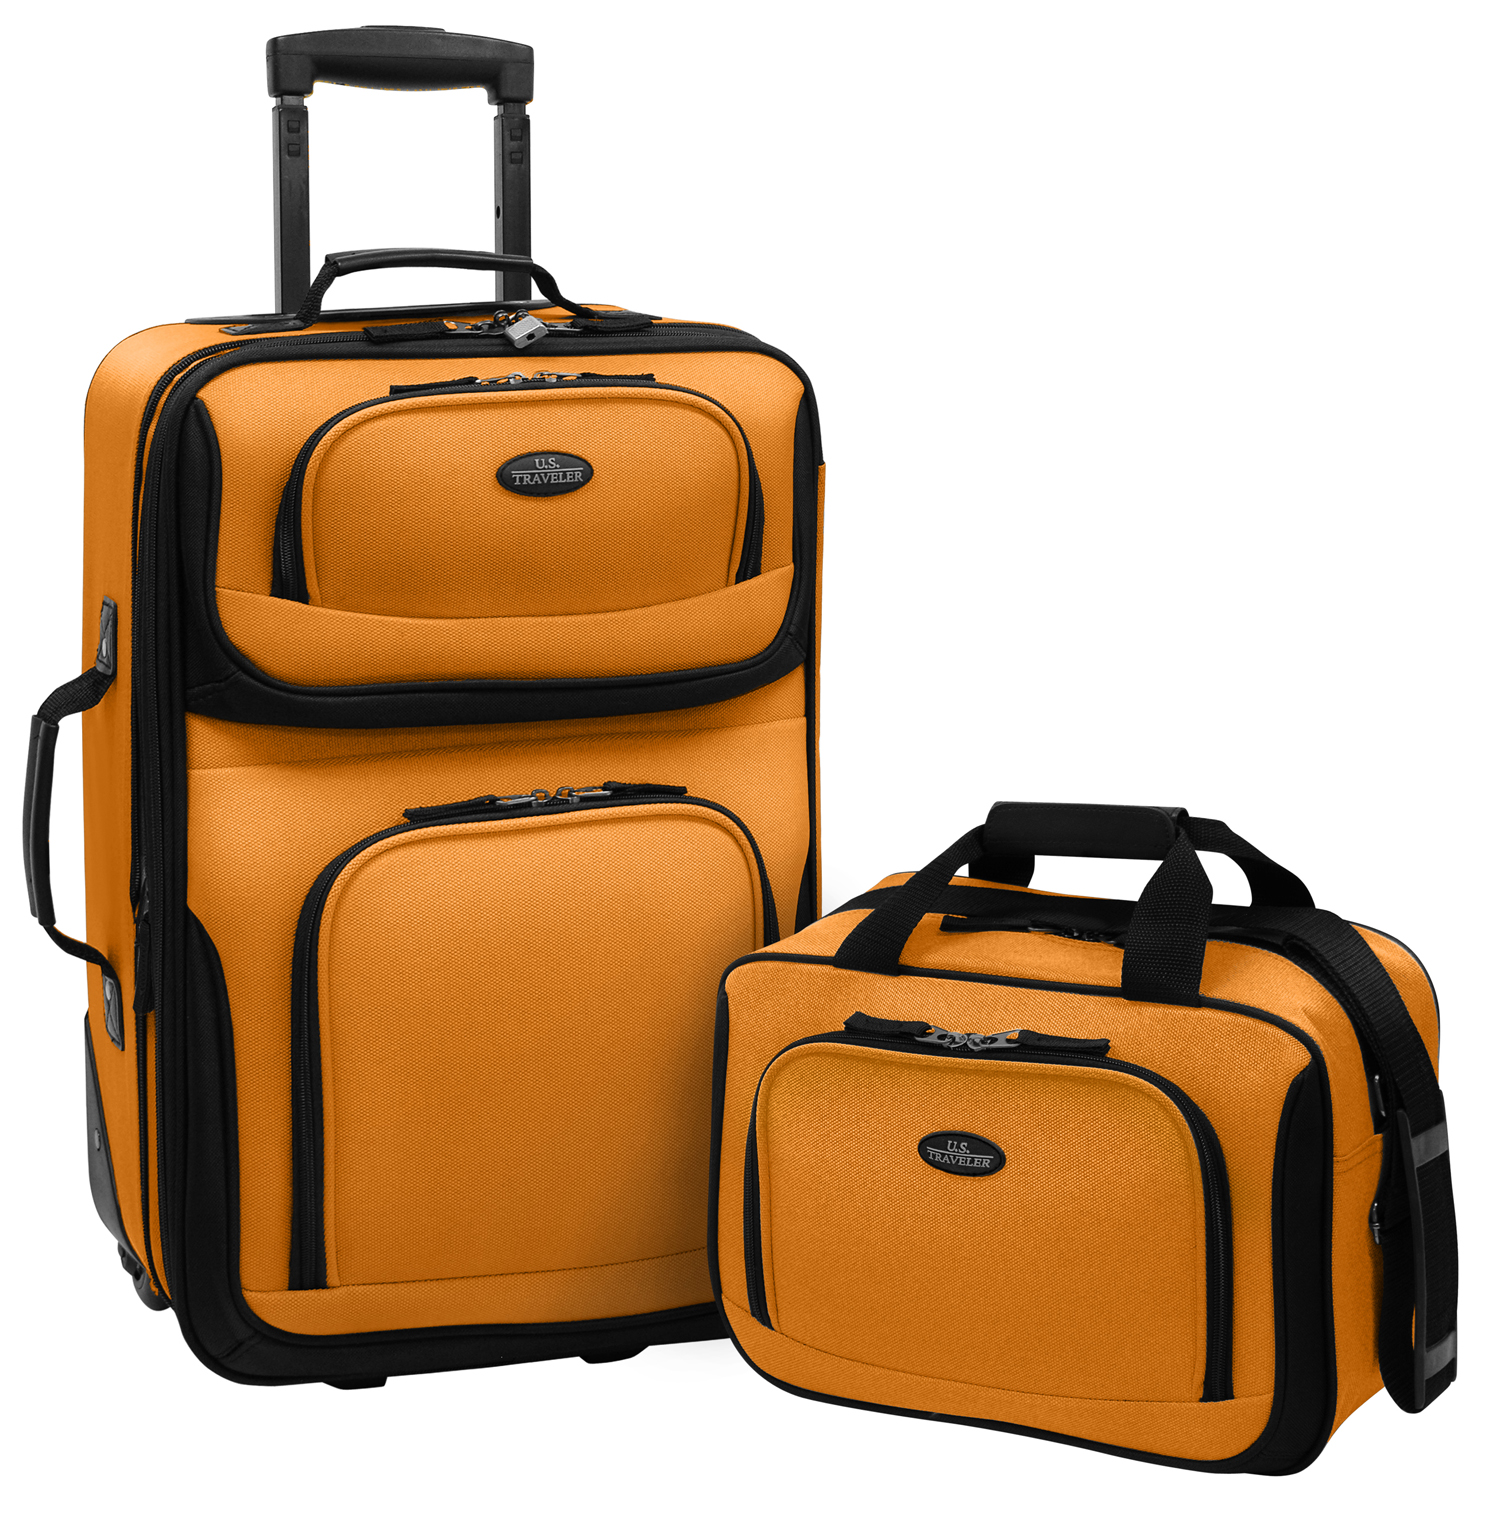 Us5600o 2-piece Expandable Travel Luggage Set In Orange